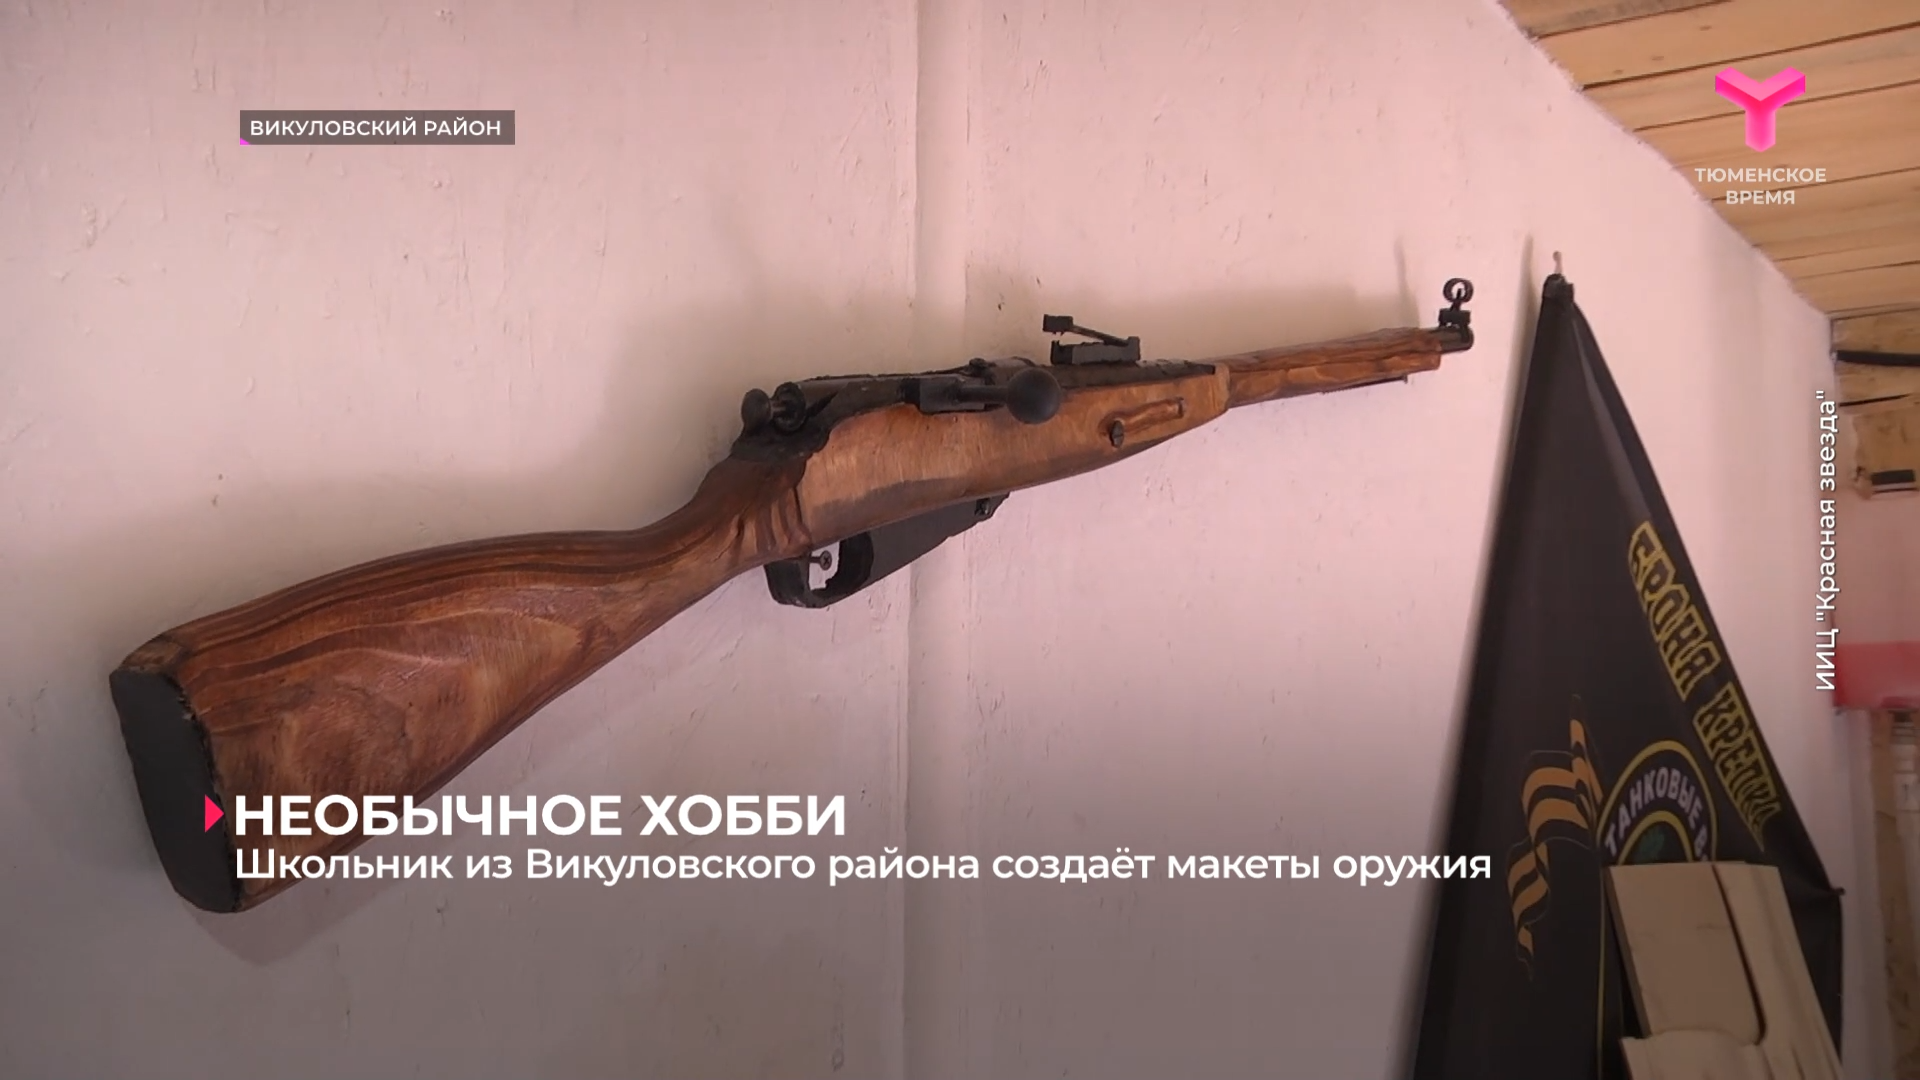 Школьник из Викуловского района создаёт макеты оружия